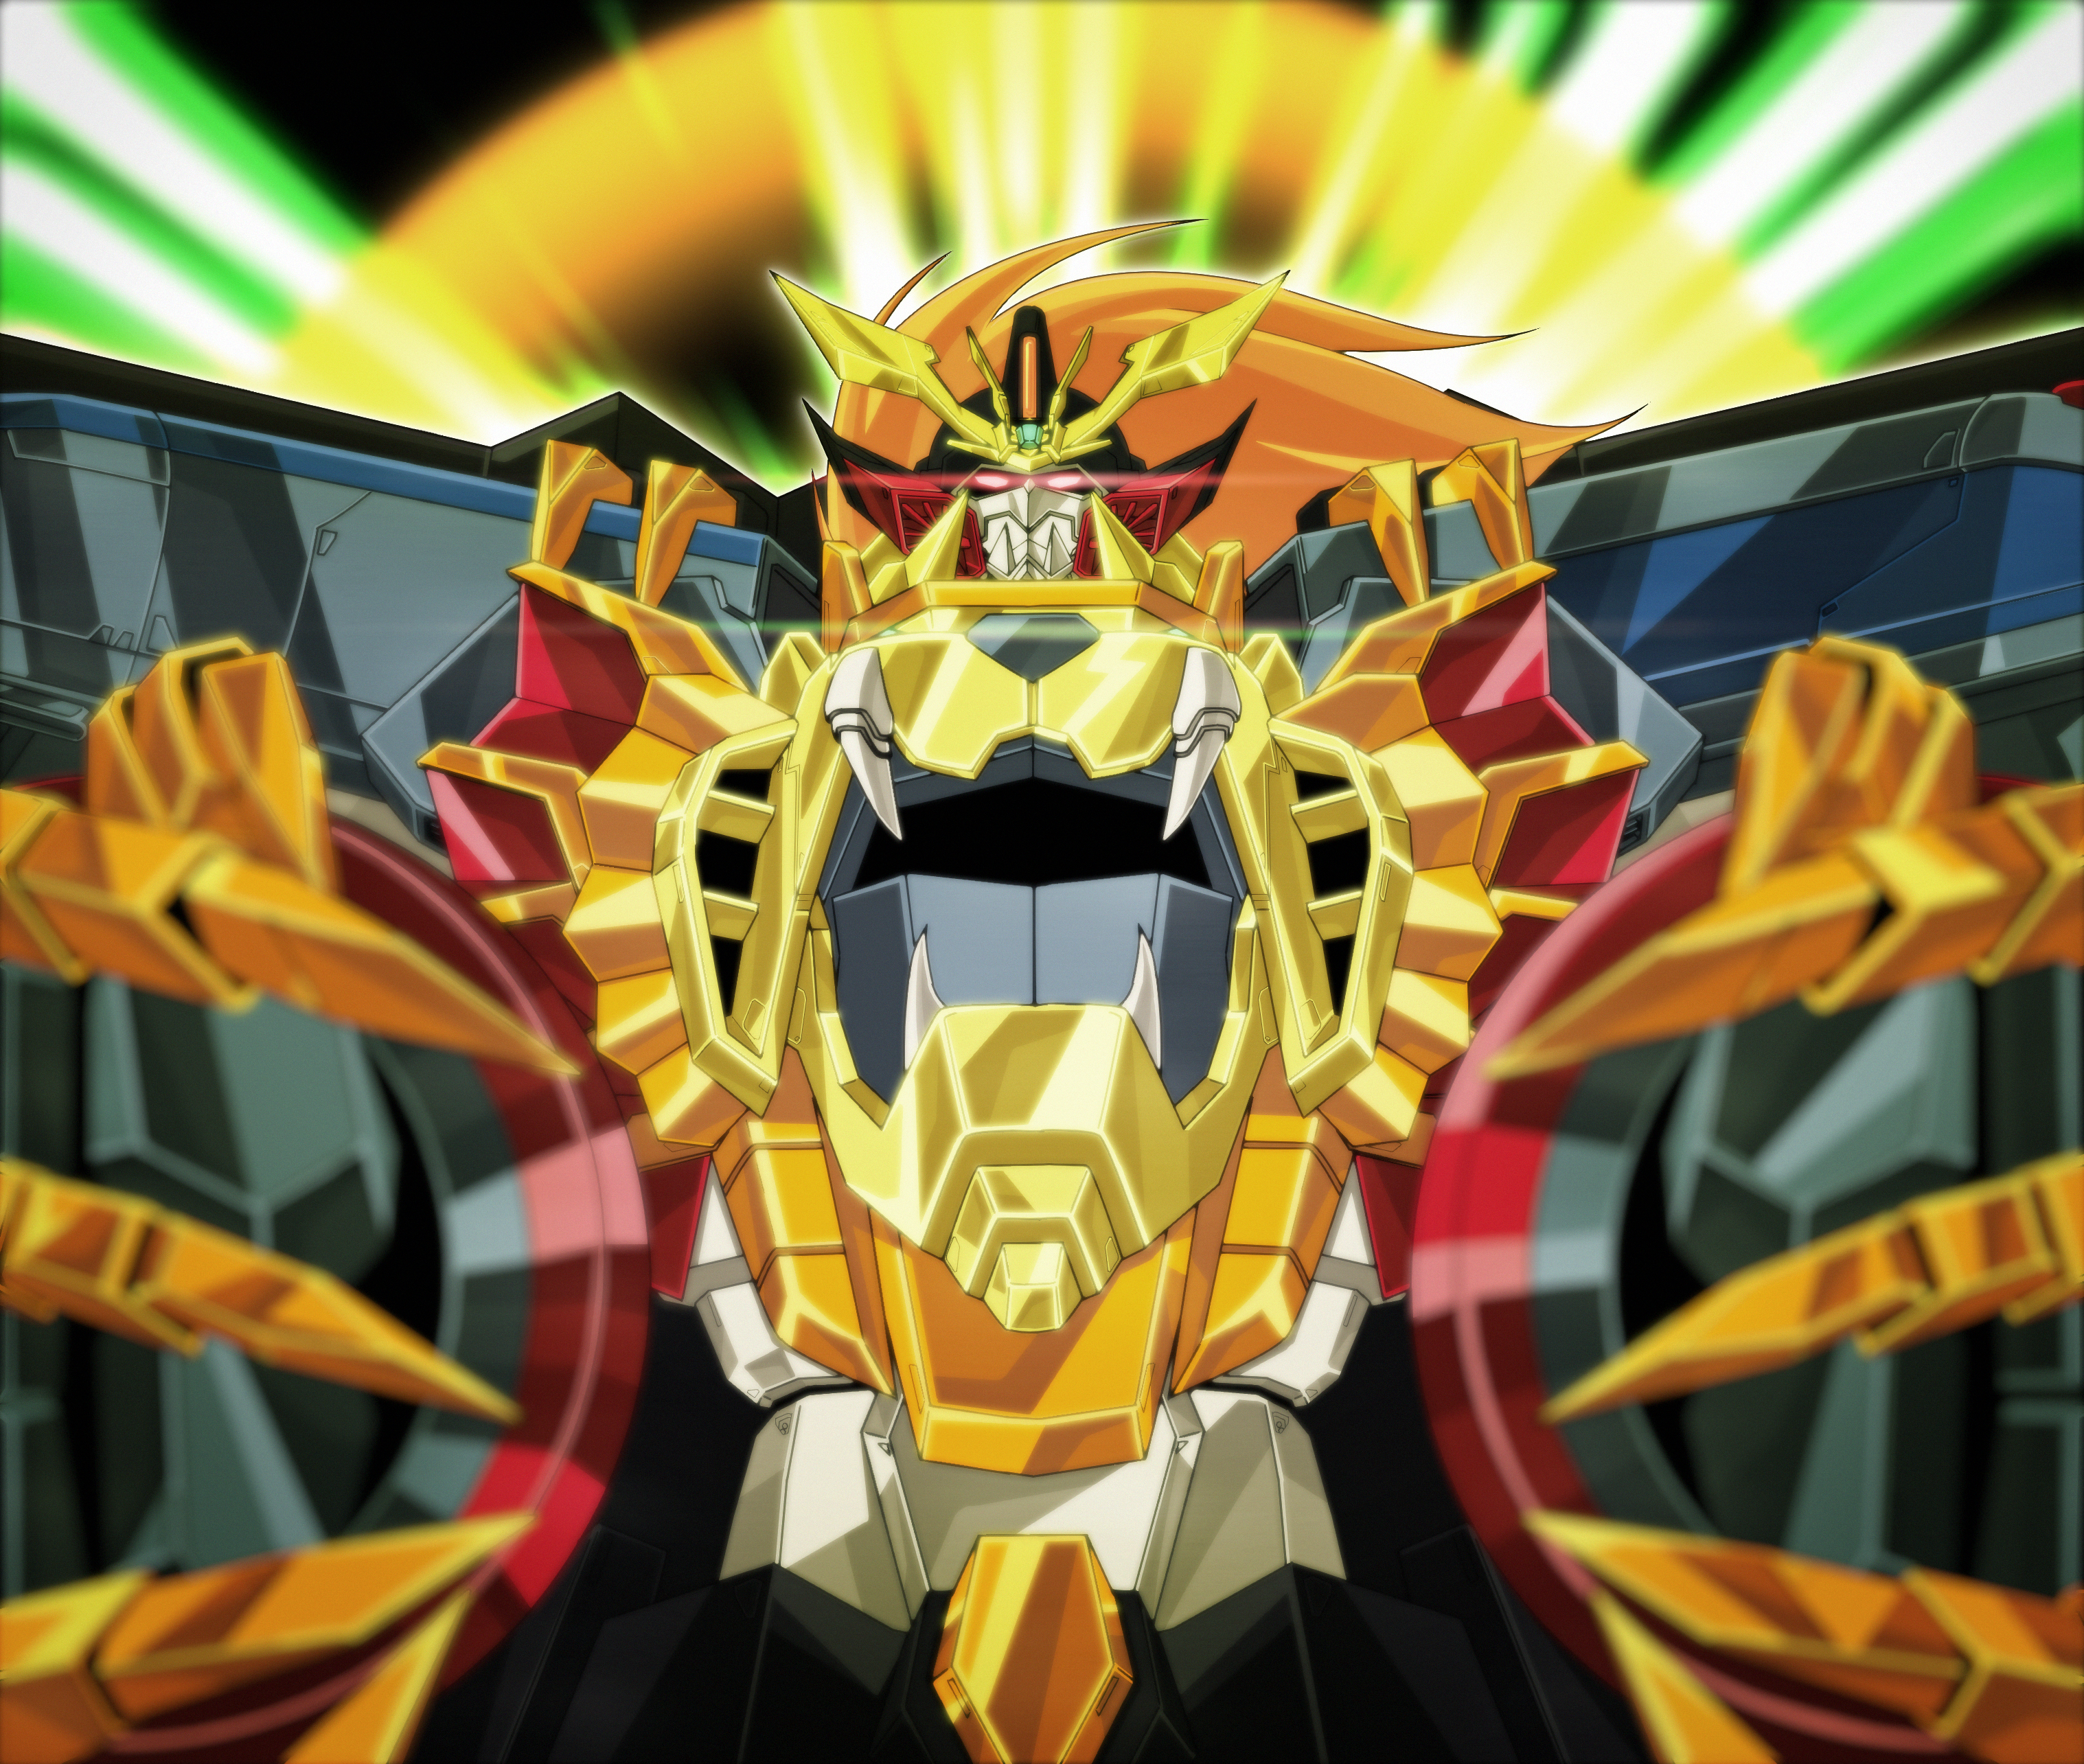 Anime 3035x2569 anime mechs Super Robot Taisen The King of Braves Gaogaigar FINAL Genesic Gaogaigar artwork digital art fan art